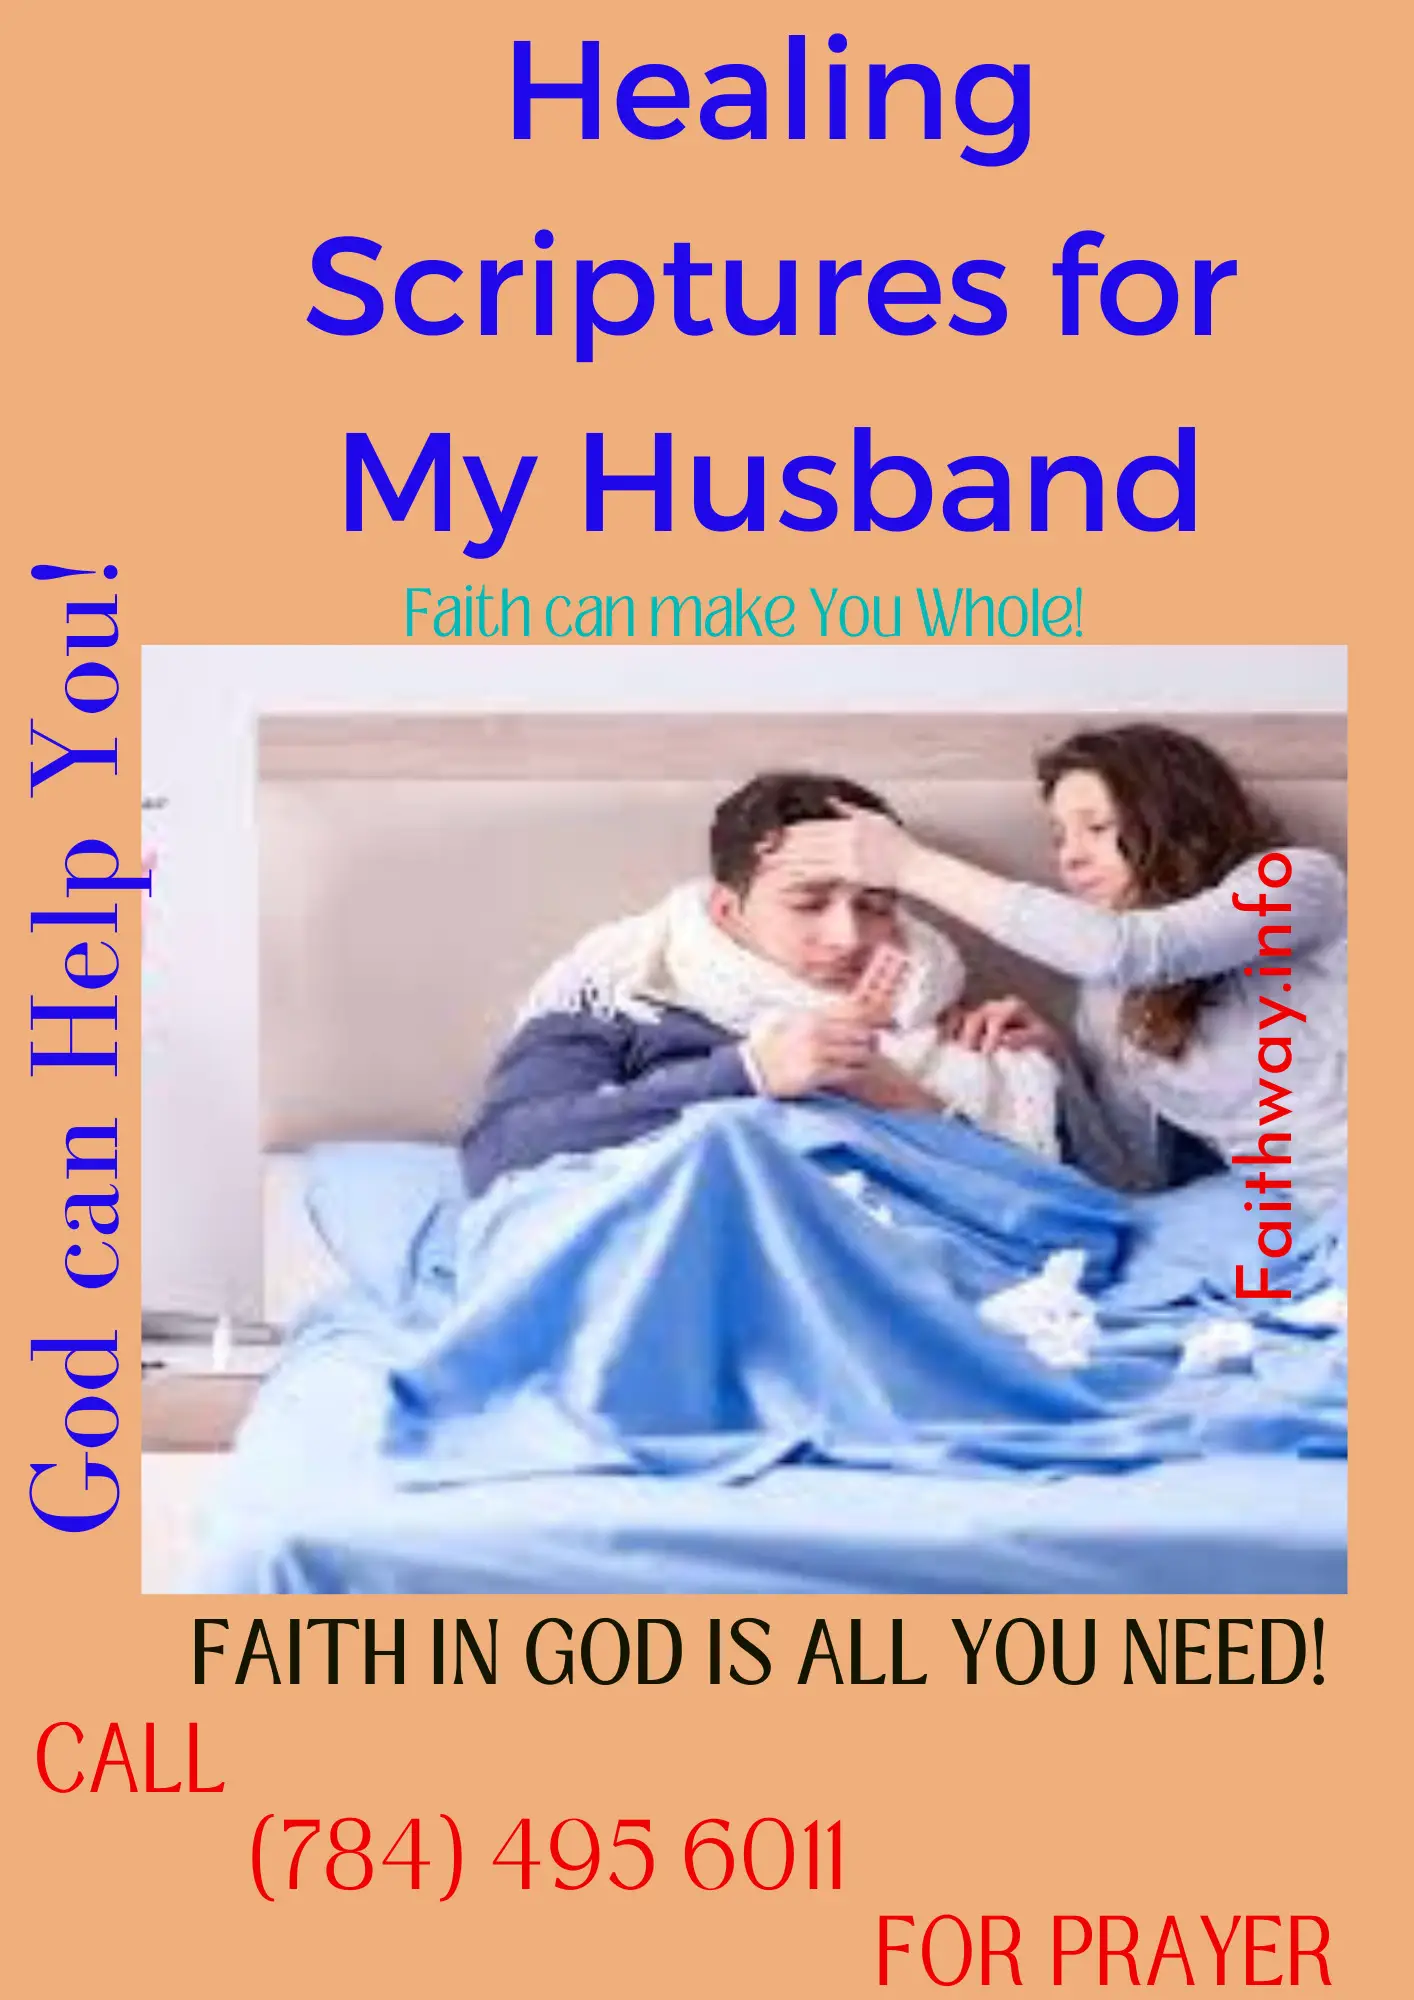 21 Escrituras curativas para mi esposo enfermo: Versículos bíblicos KJV -